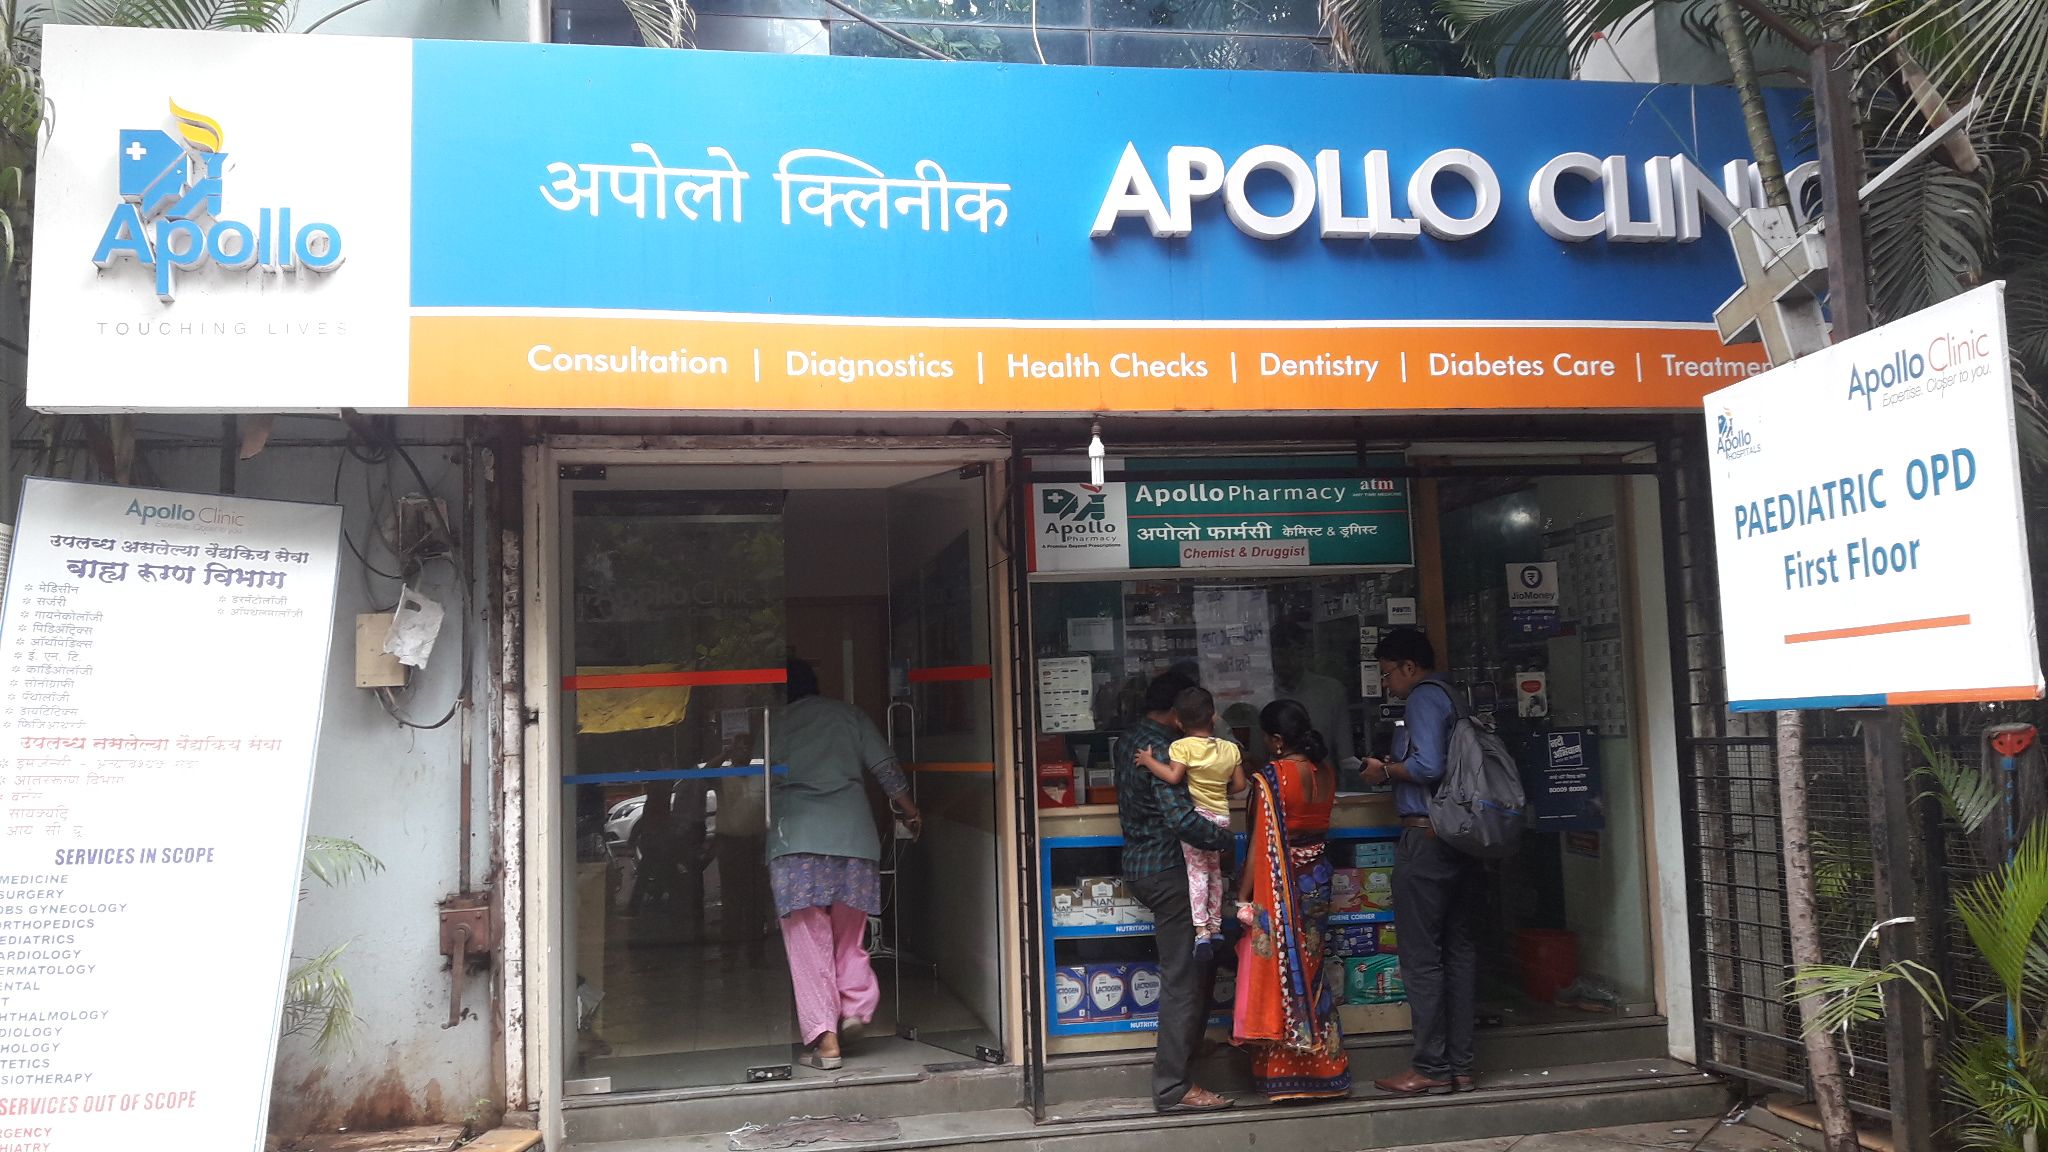 Apollo Clinic, Viman Nagar